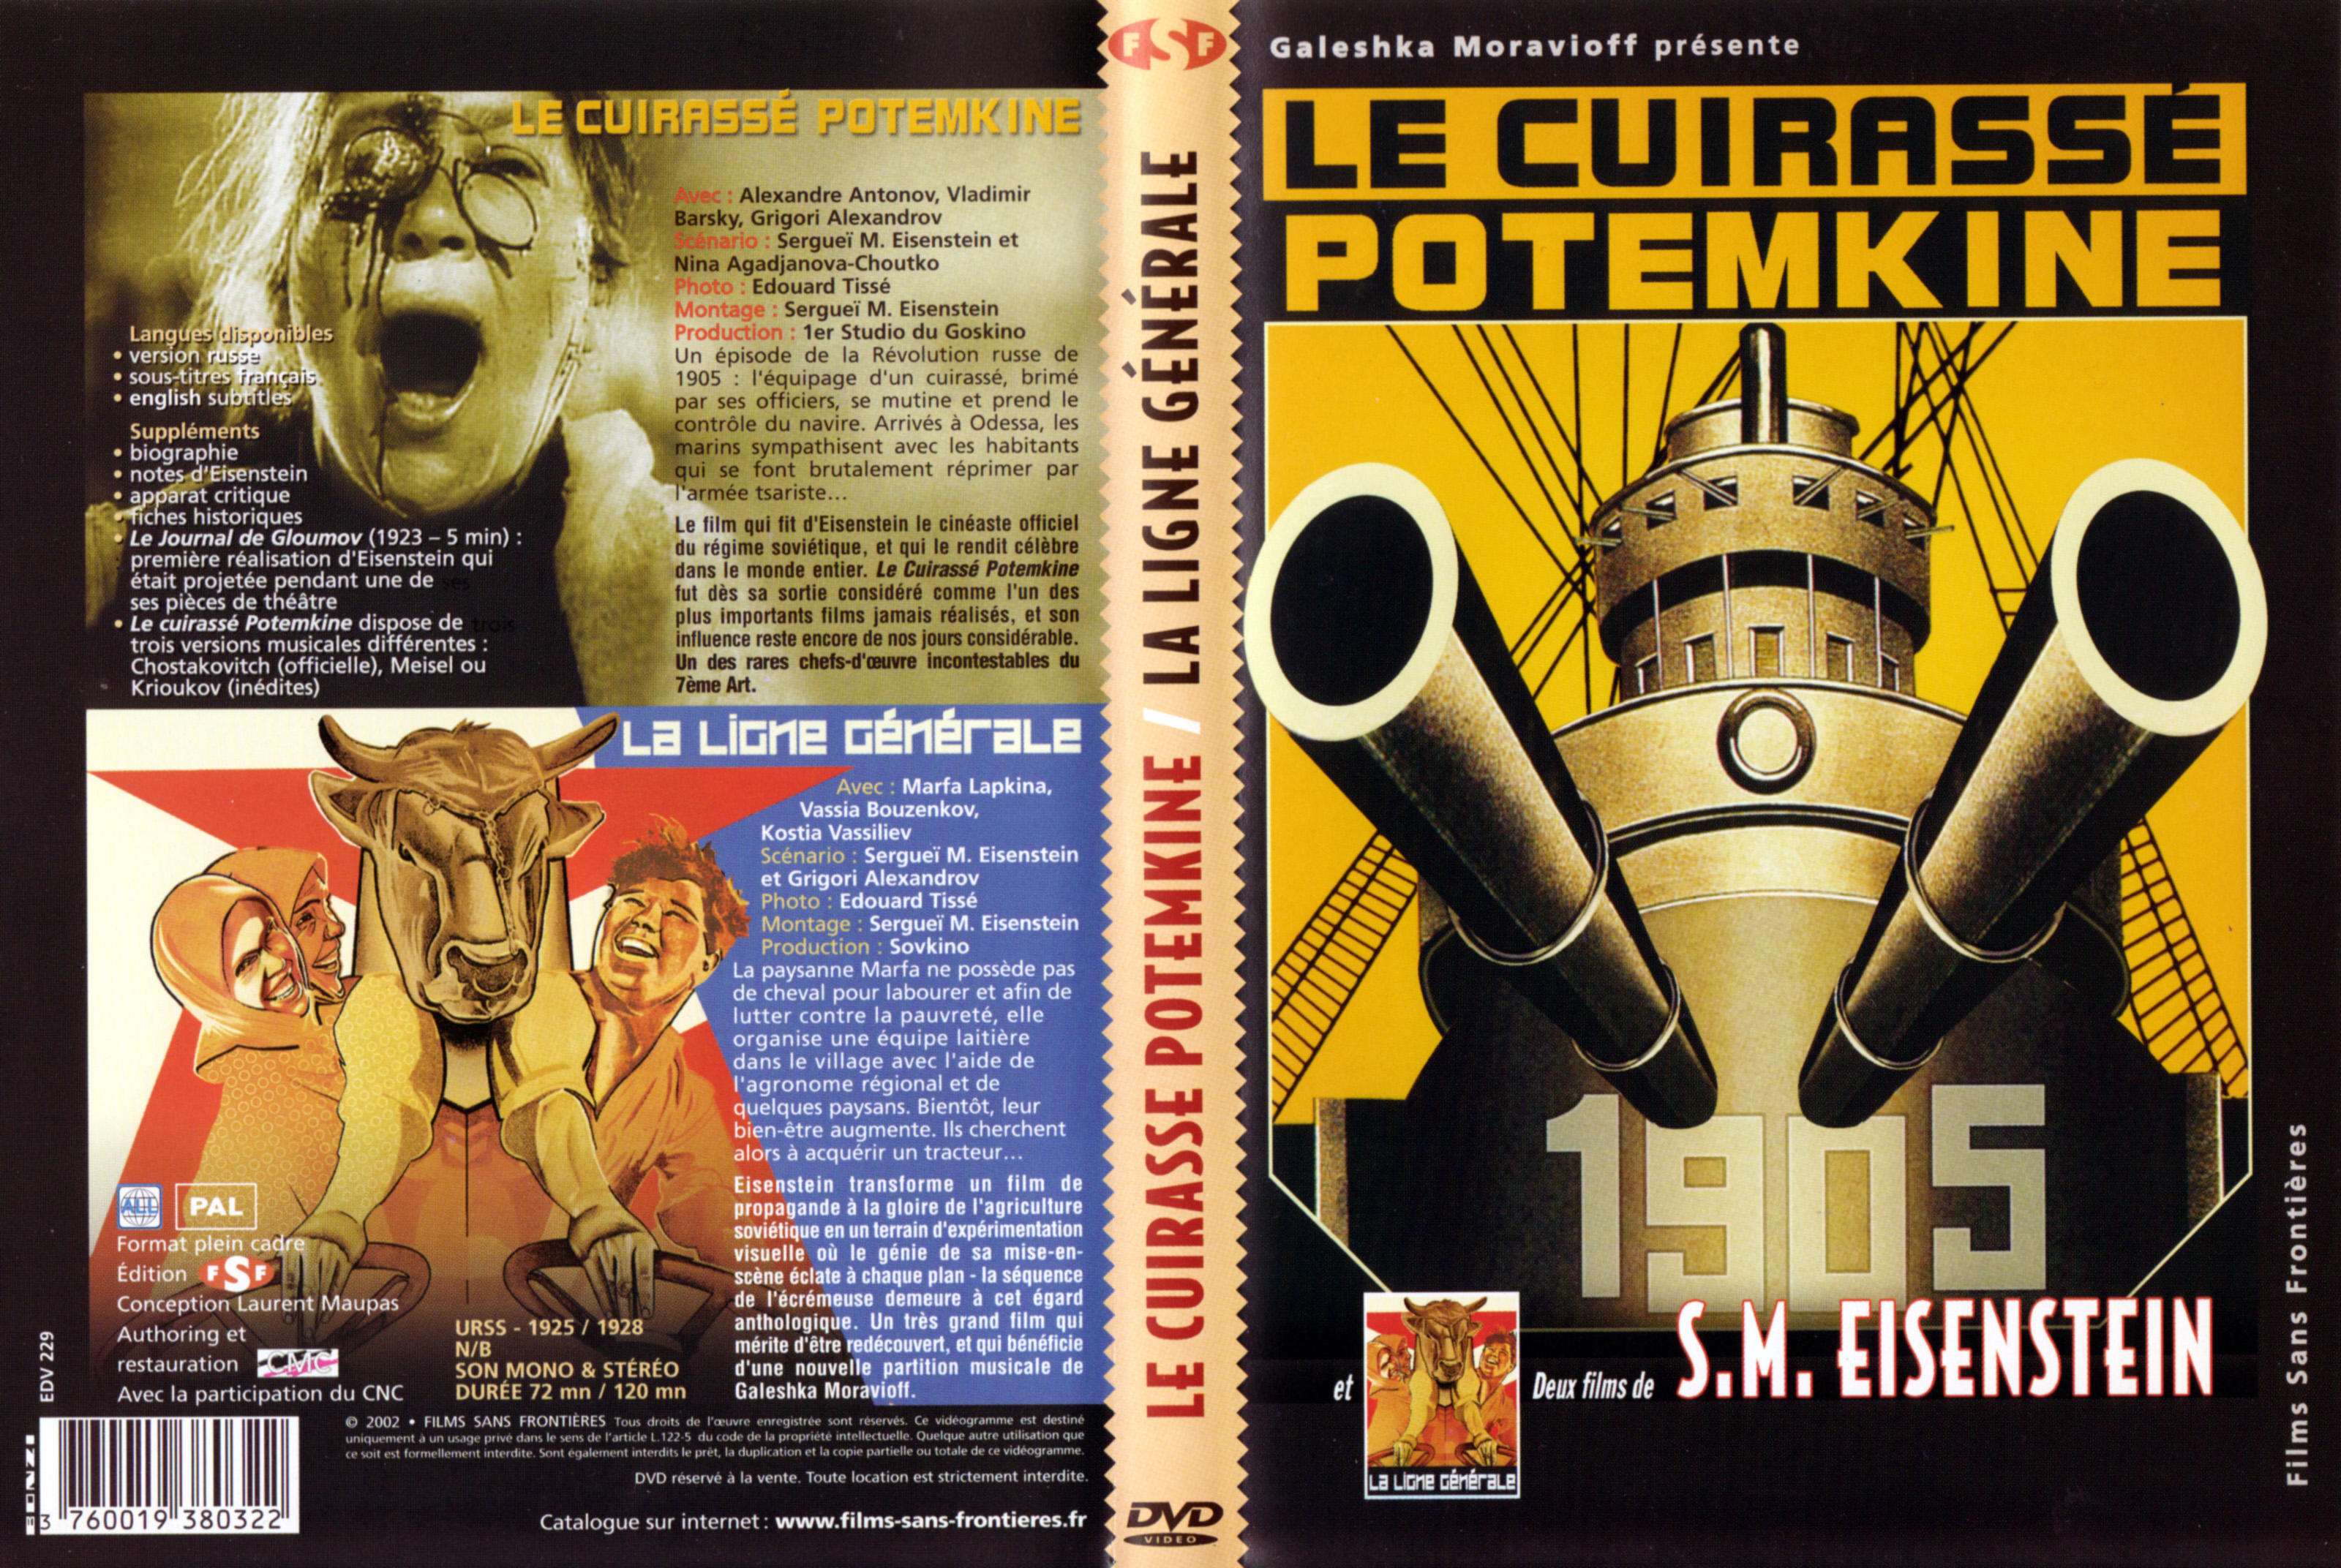 Jaquette DVD Le cuirasse Potemkine + La ligne generale